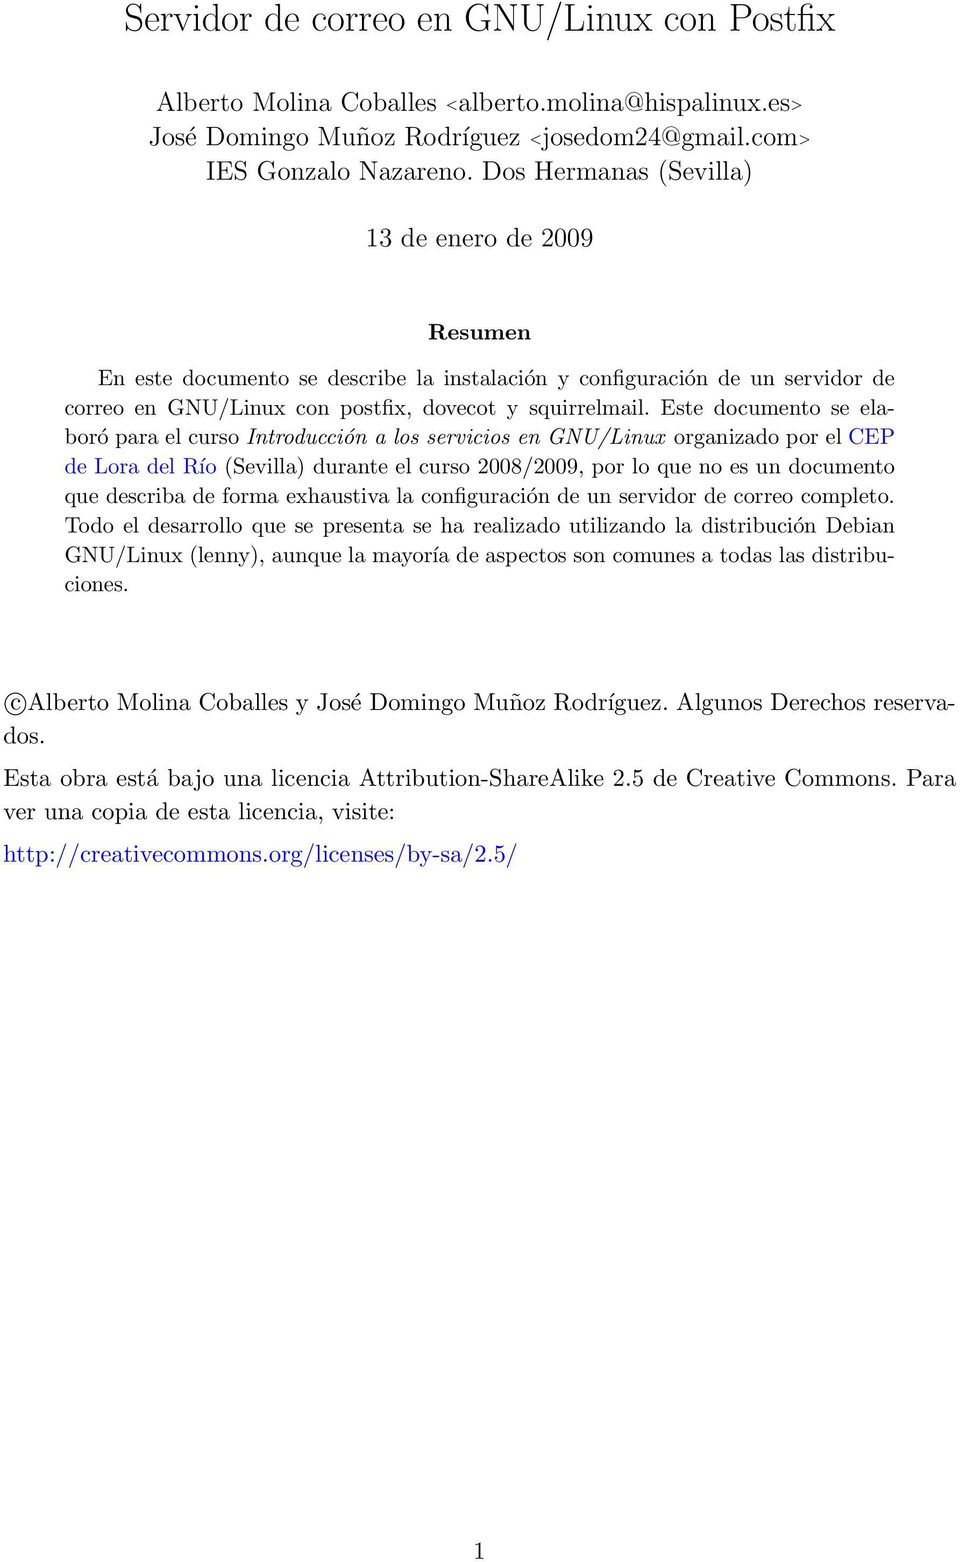 Este documento se elaboró para el curso Introducción a los servicios en GNU/Linux organizado por el CEP de Lora del Río (Sevilla) durante el curso 2008/2009, por lo que no es un documento que